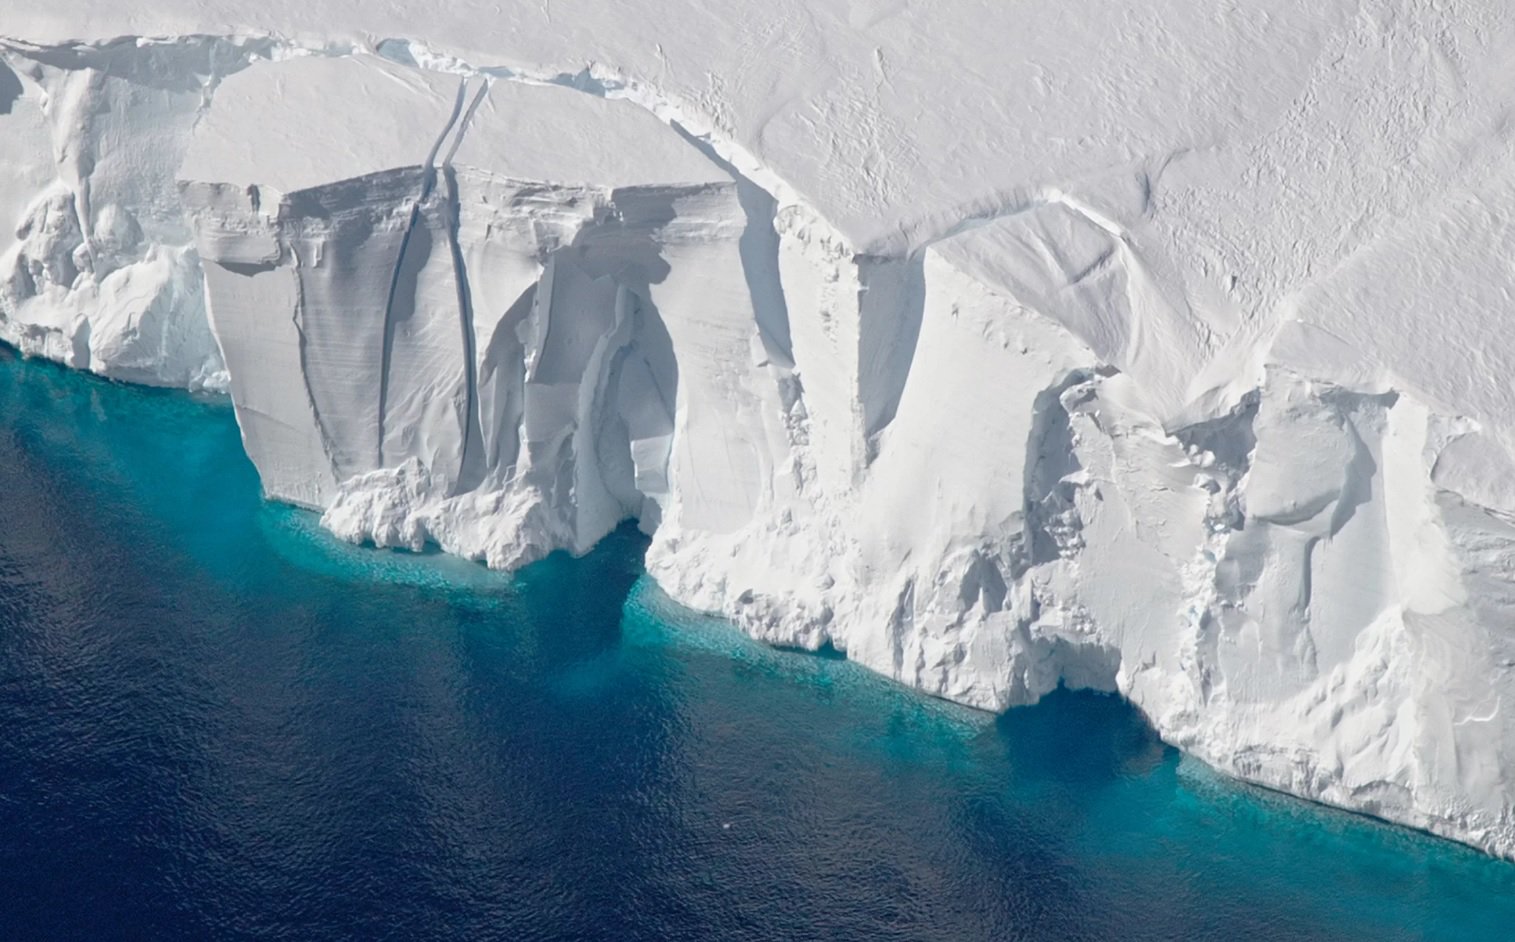 Les stocks de glace dans l'Antarctique au cours des 25 dernières années ont considérablement diminué